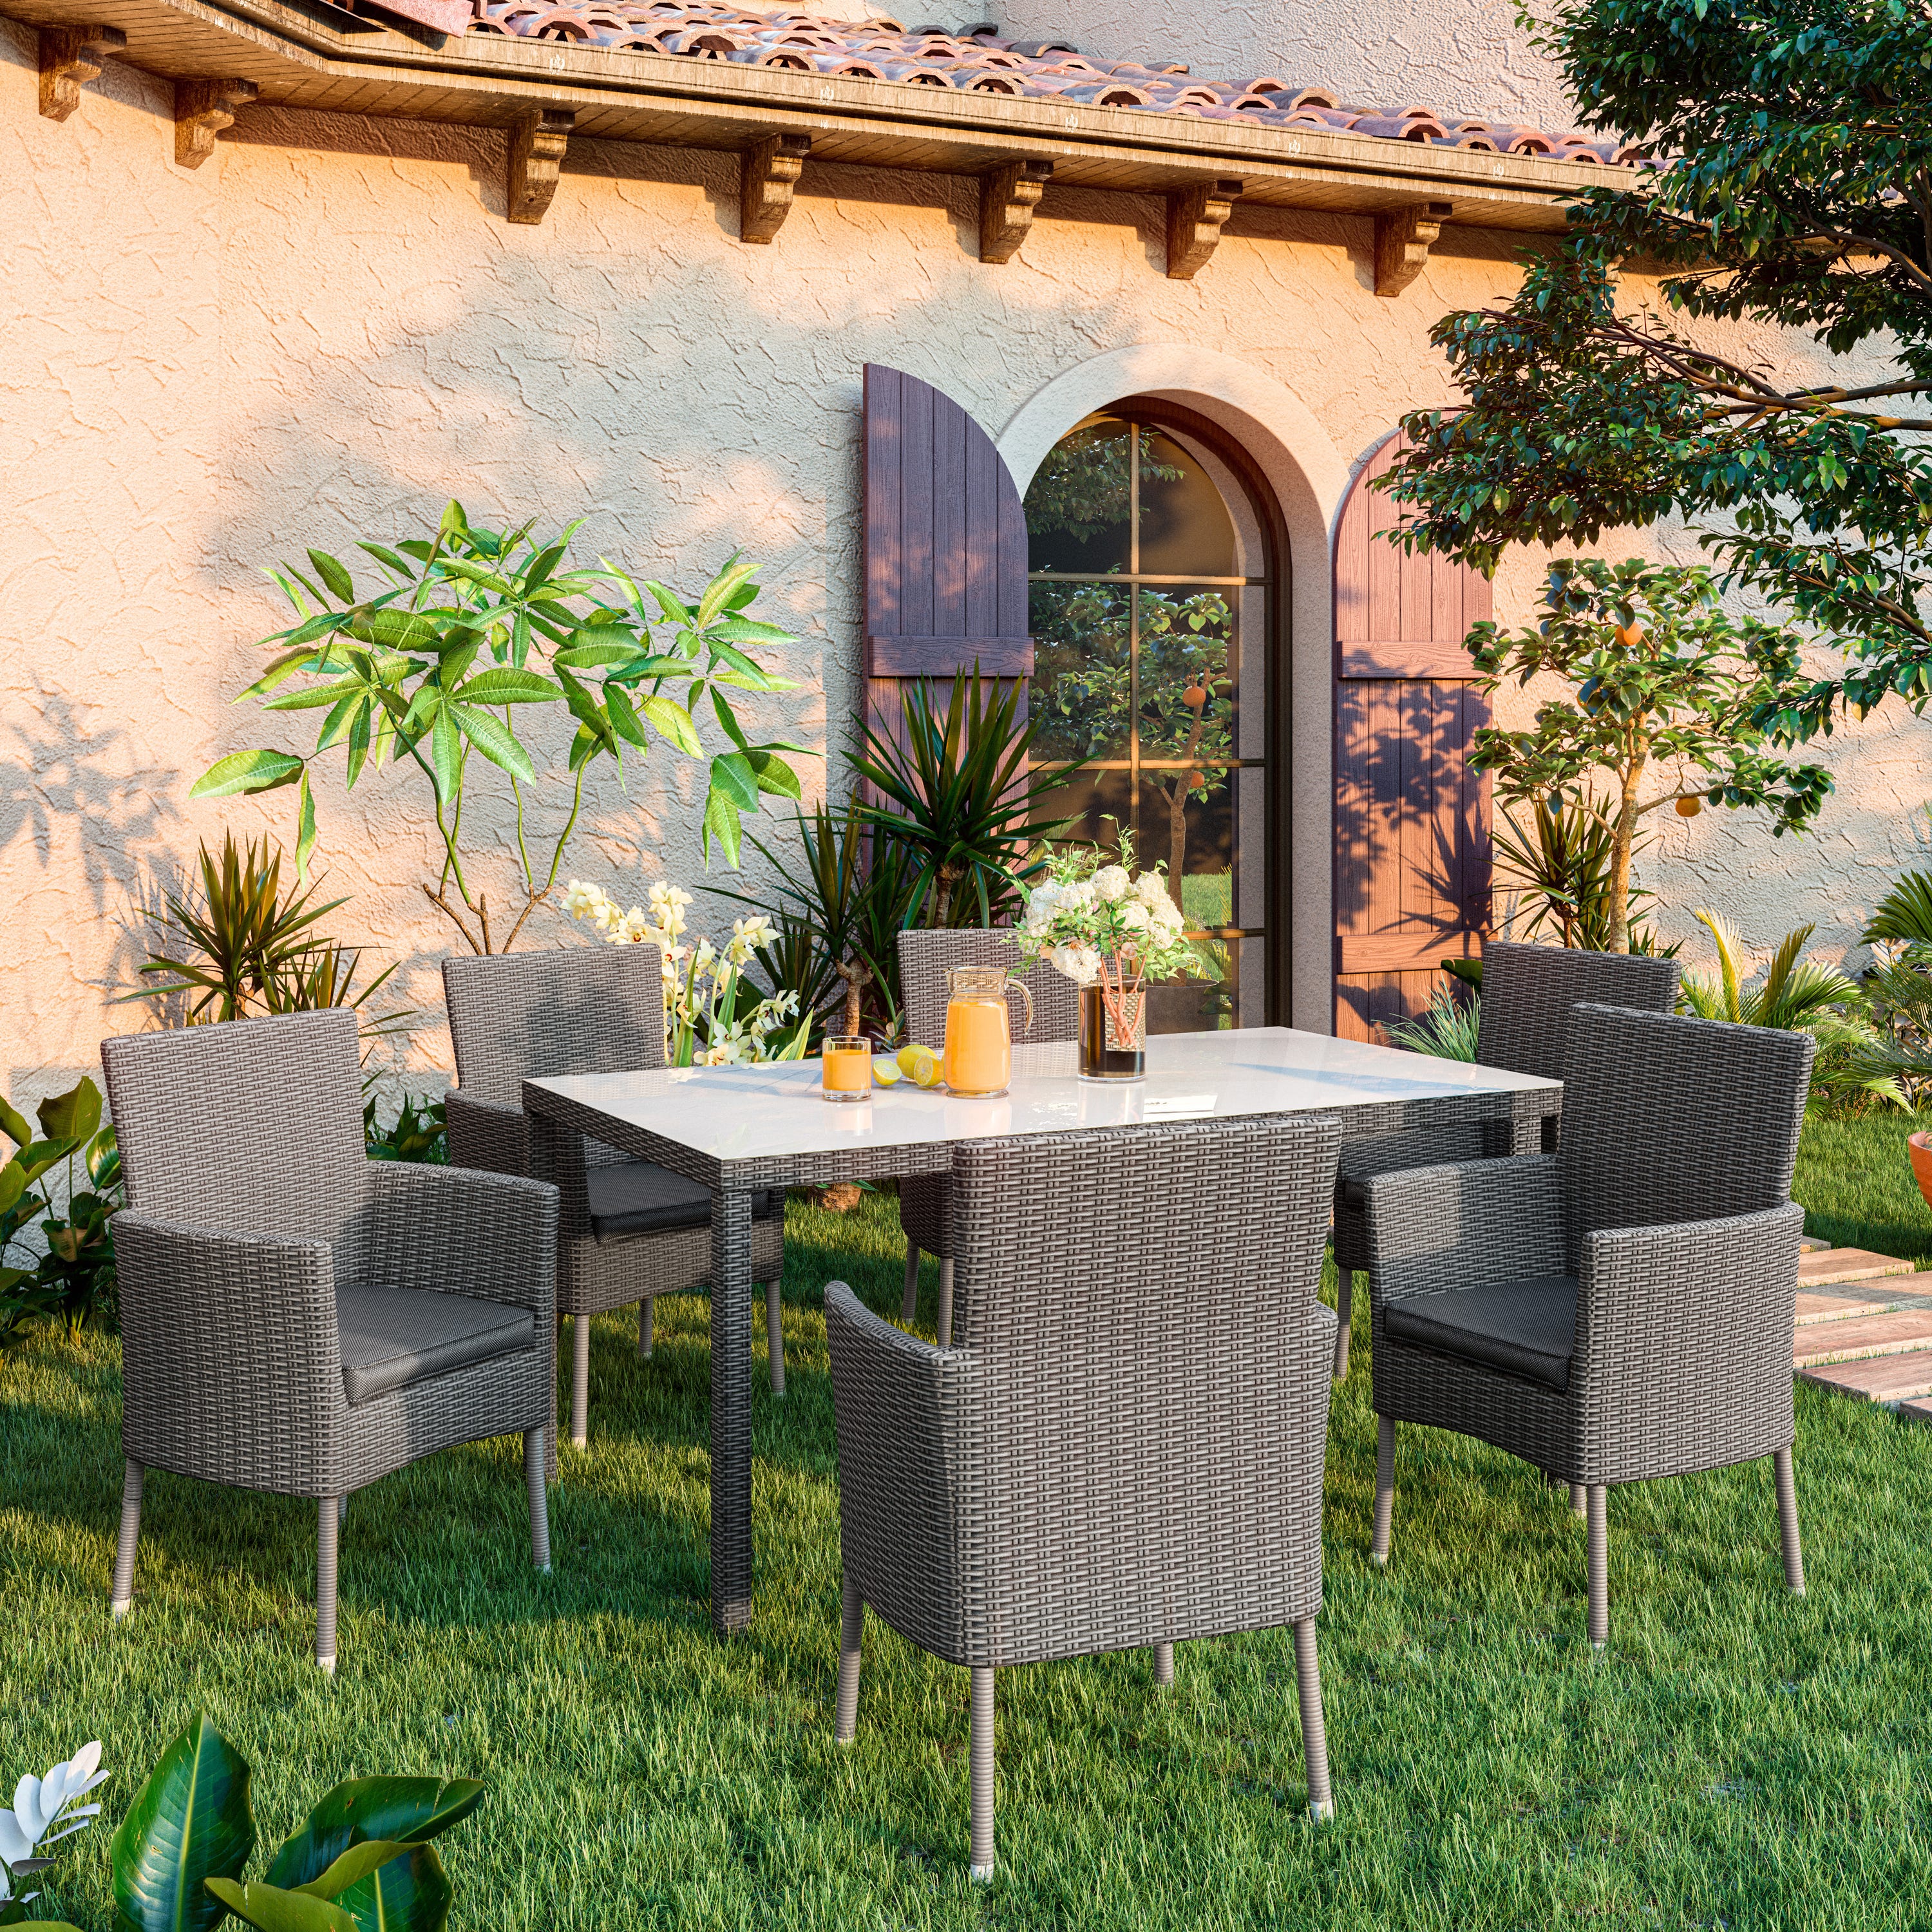 El set ideal para terrazas, con mesa extensible - Muebles Jardín